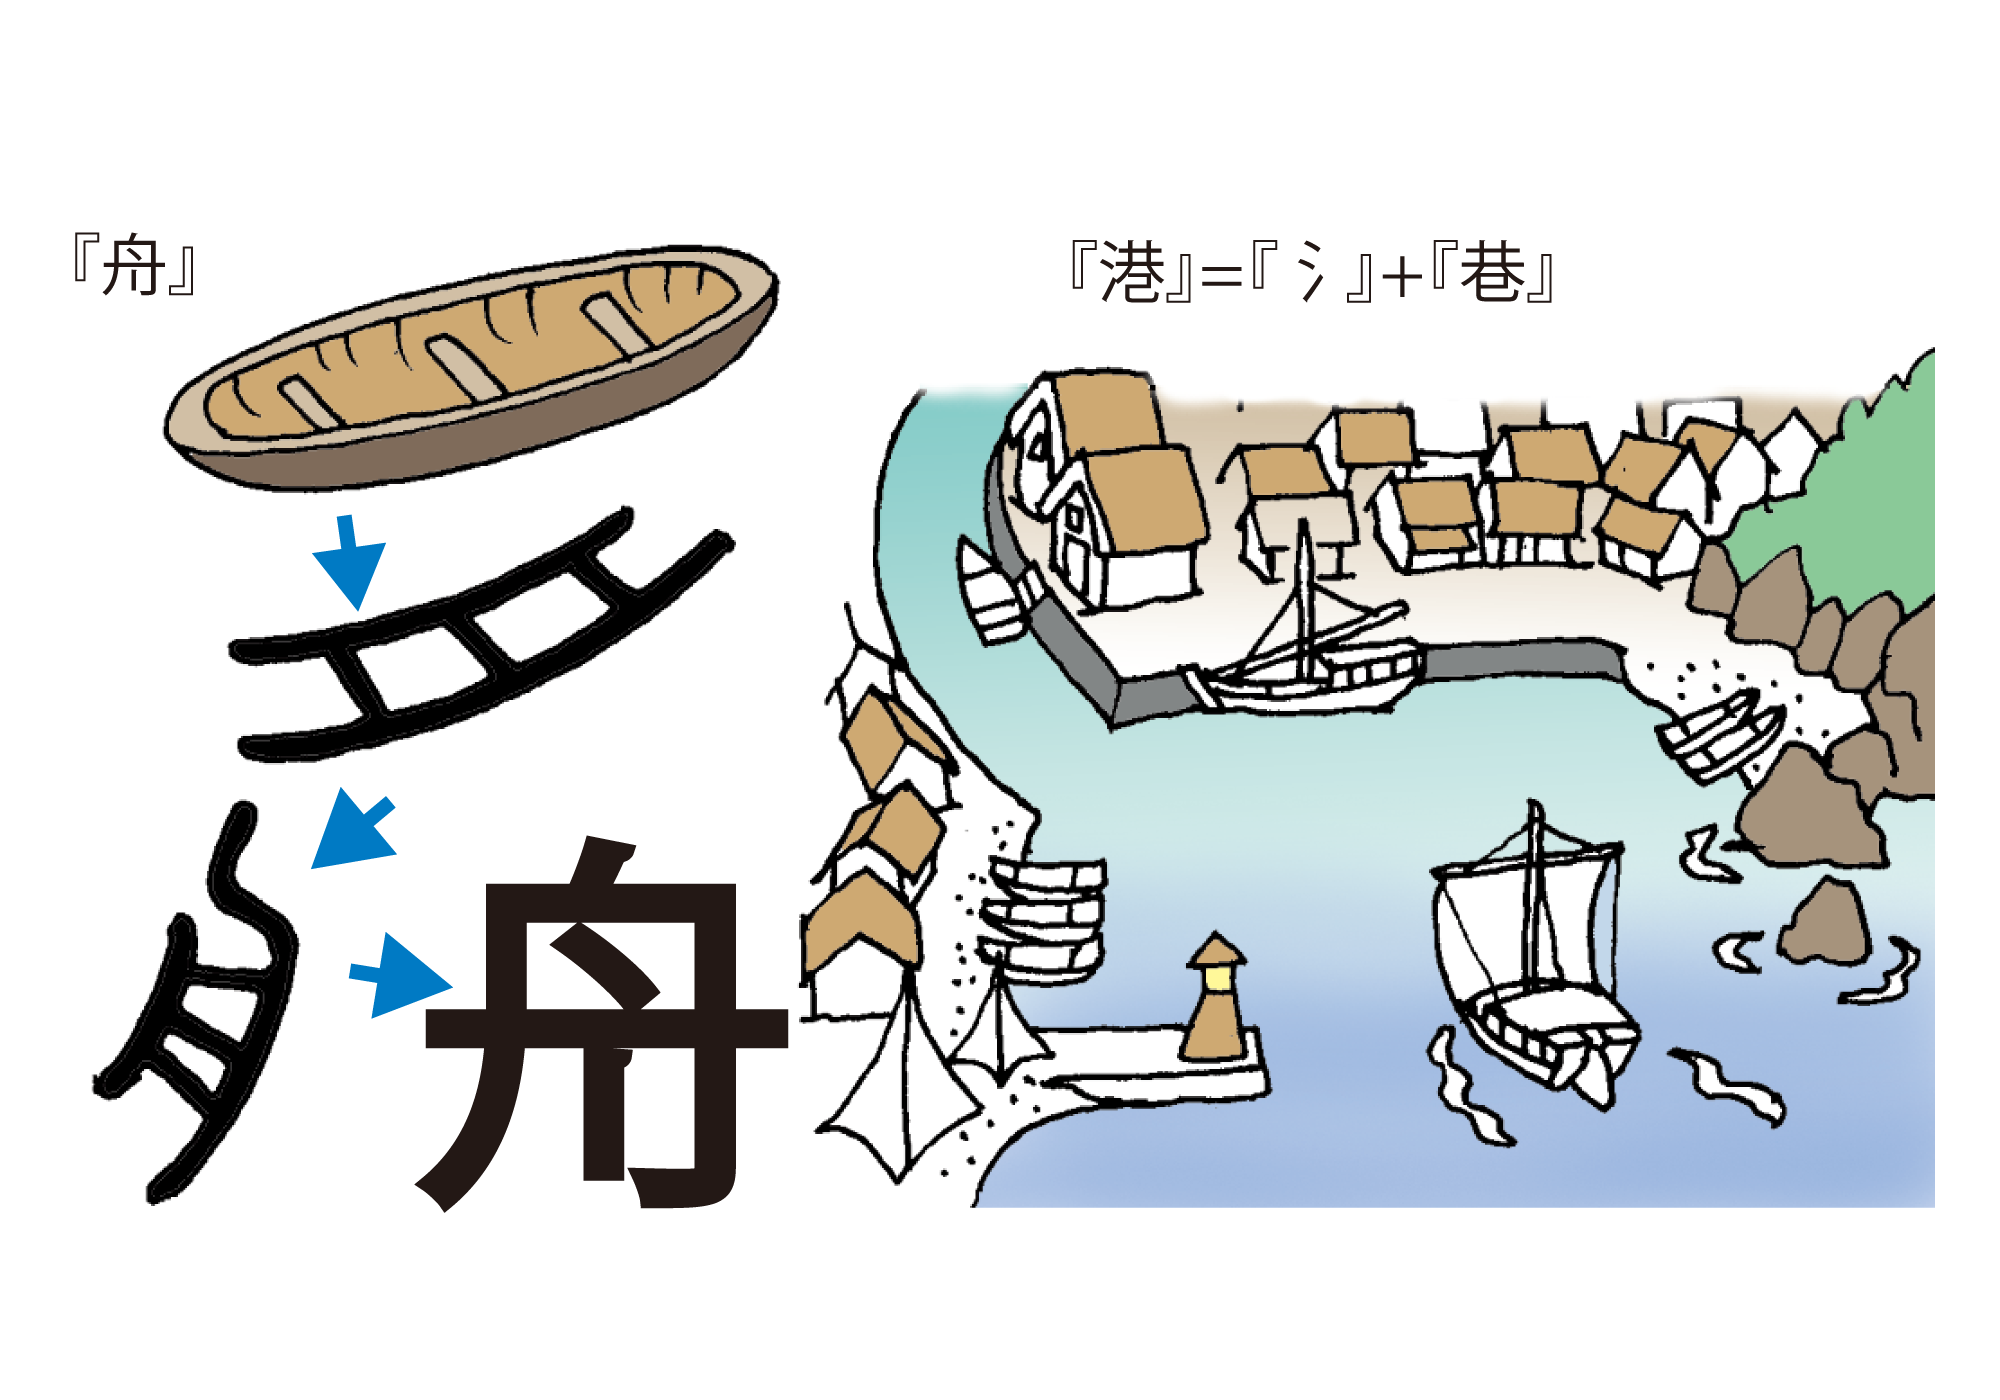 舟と船 港の漢字の由来 船のなるほど 海と船なるほど豆事典 日本海事広報協会